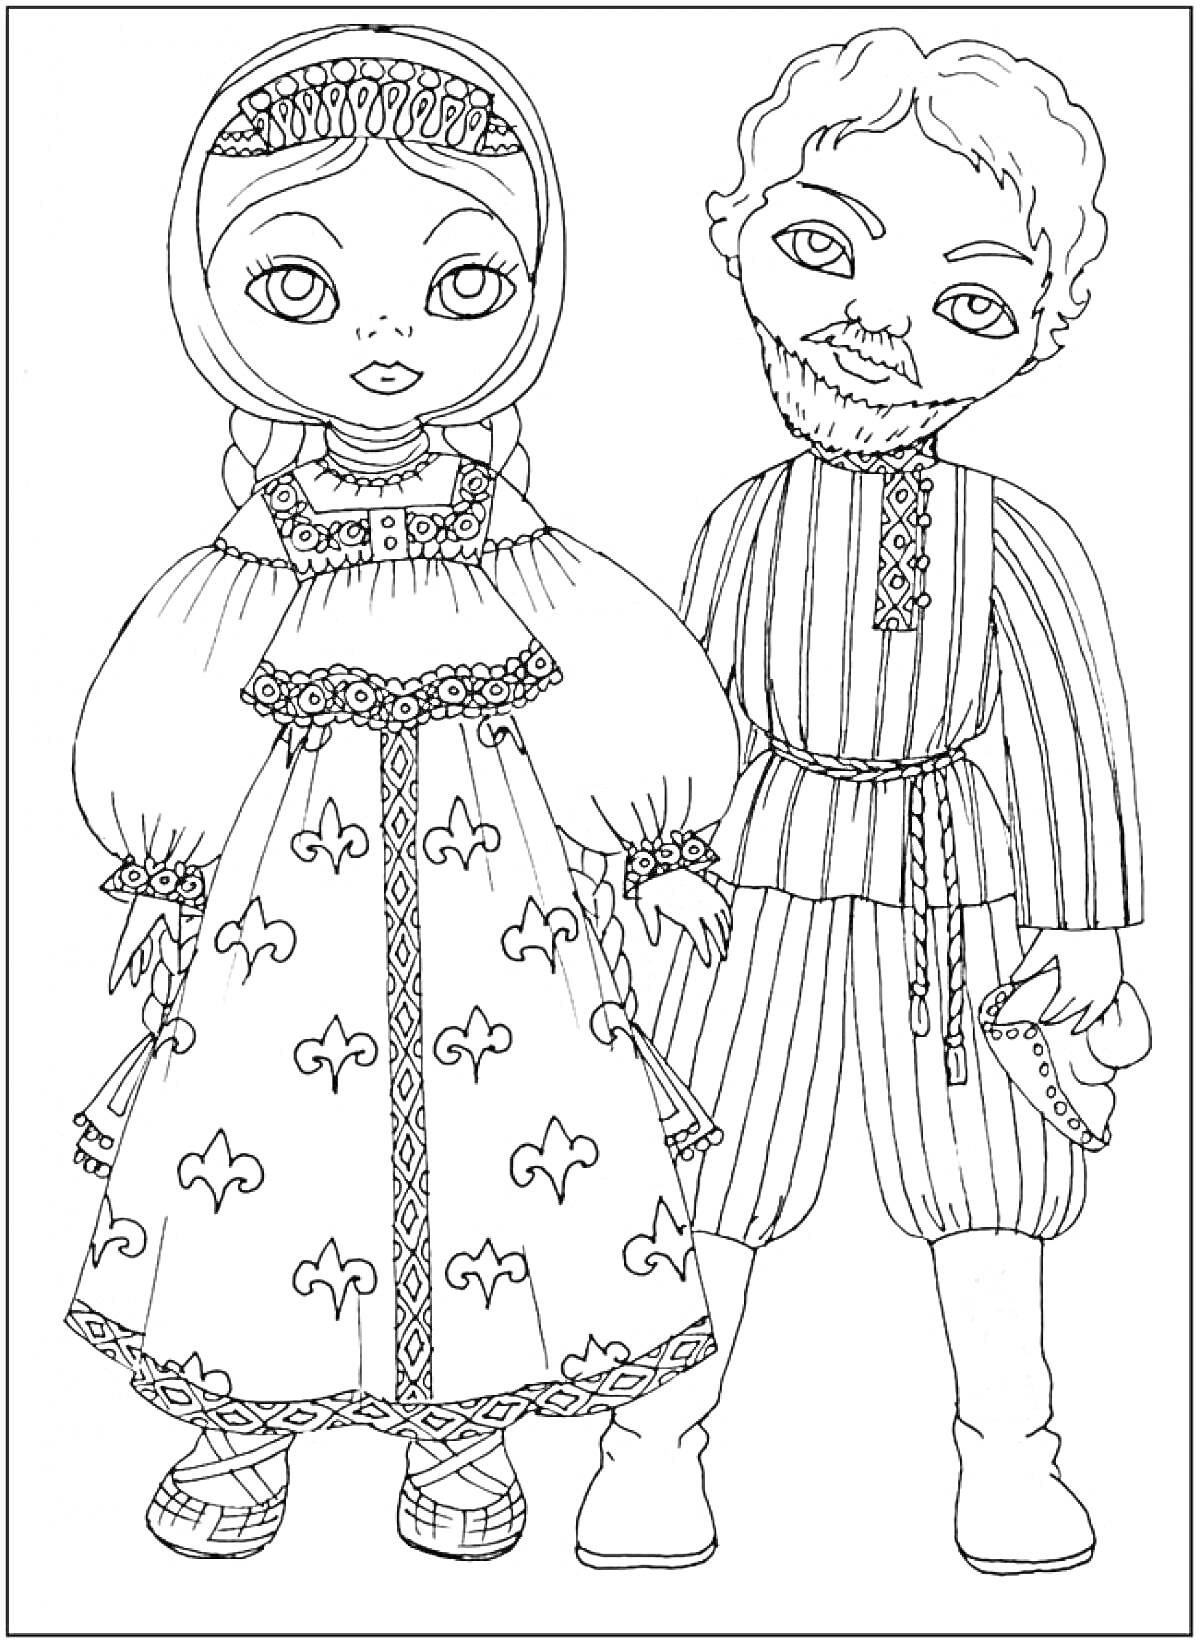 Дети в традиционных костюмах, девочка в платье с народным орнаментом и косичками, мальчик в полосатой рубахе с поясом и шароварах